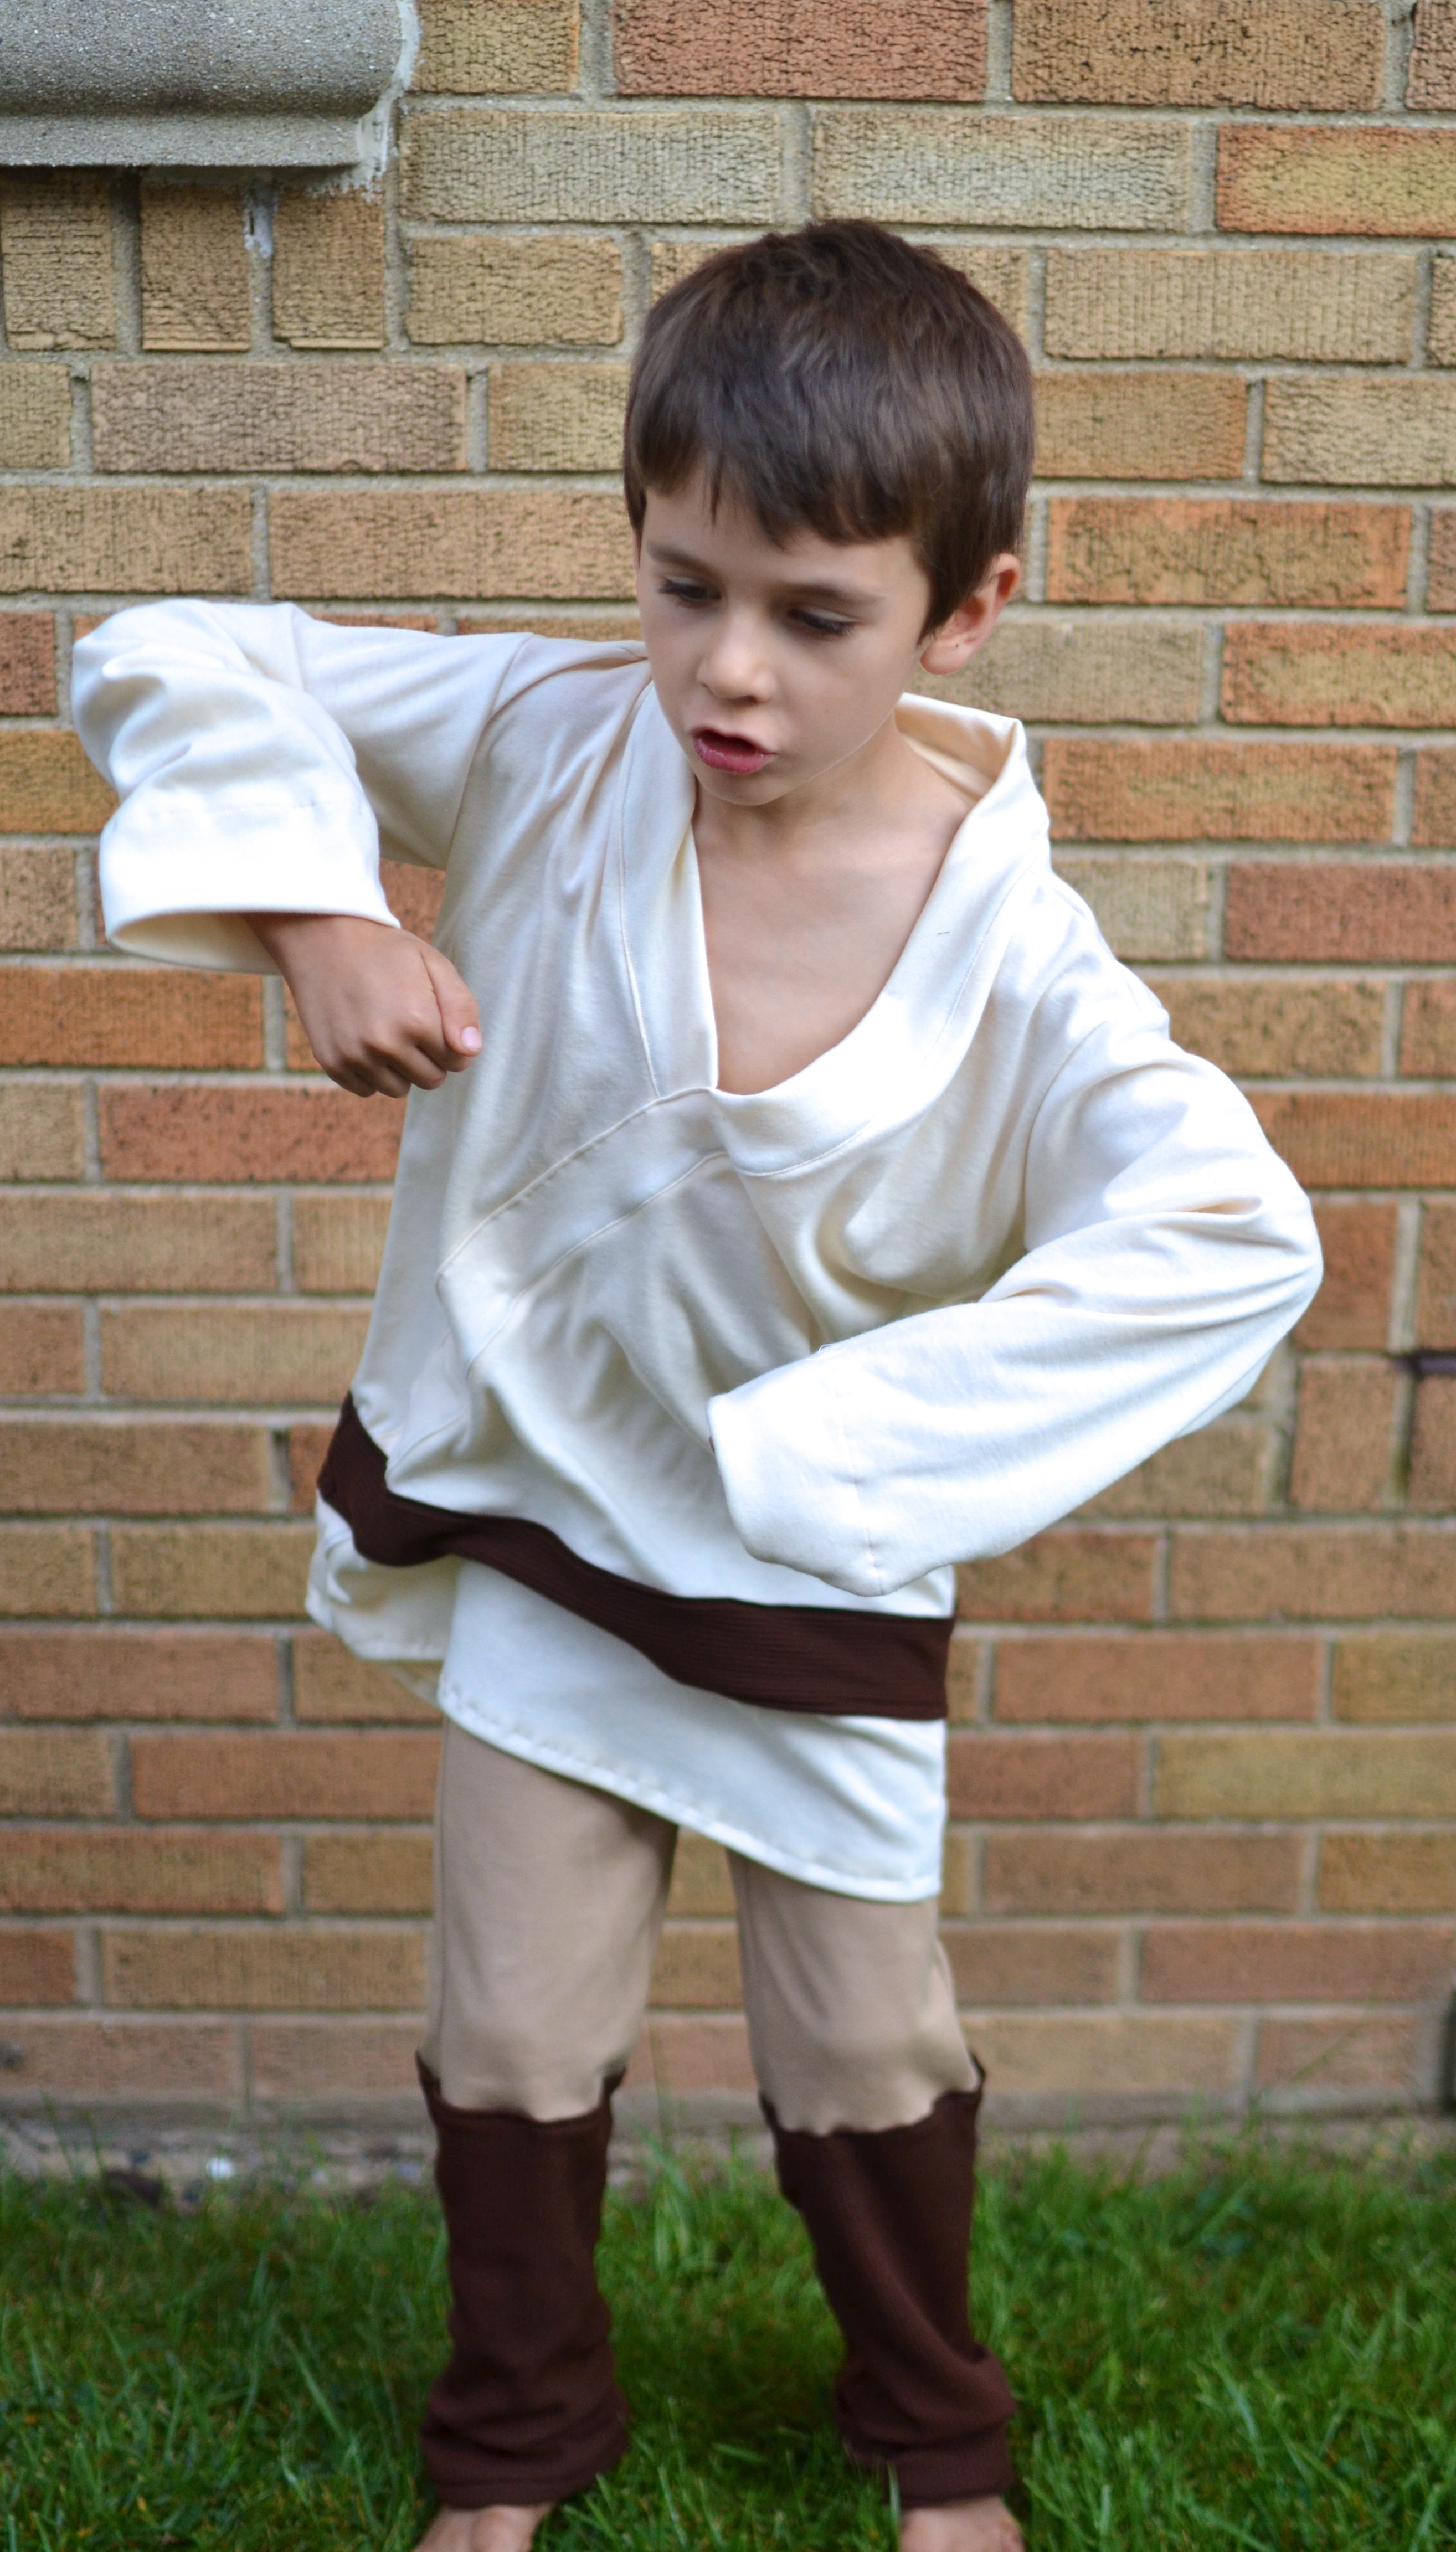 Best ideas about DIY Luke Skywalker Costumes
. Save or Pin Luke Skywalker Costume Tutorial Now.